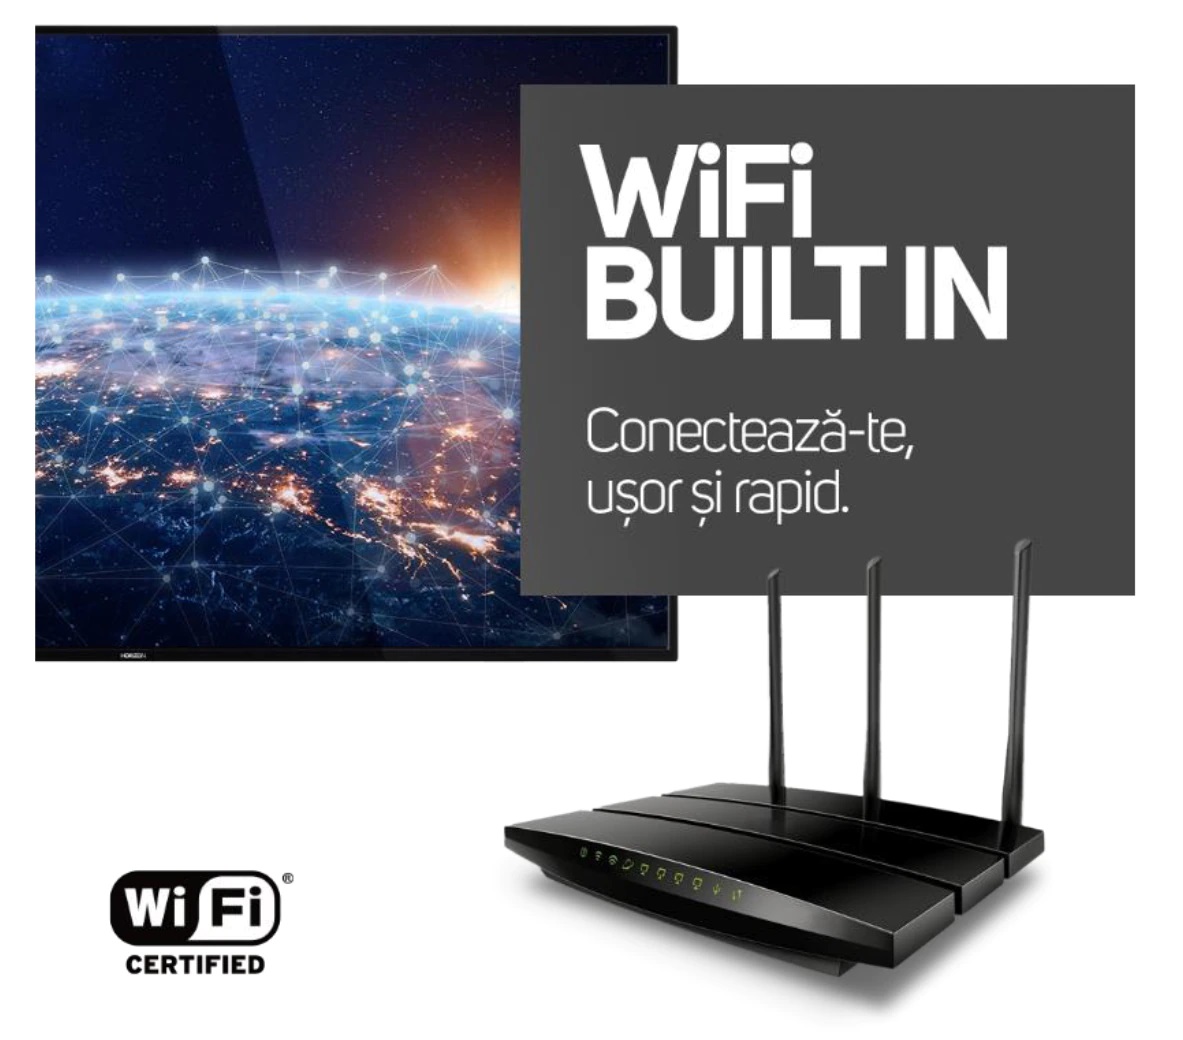 WiFi integrat. Comunica fara cabluri!